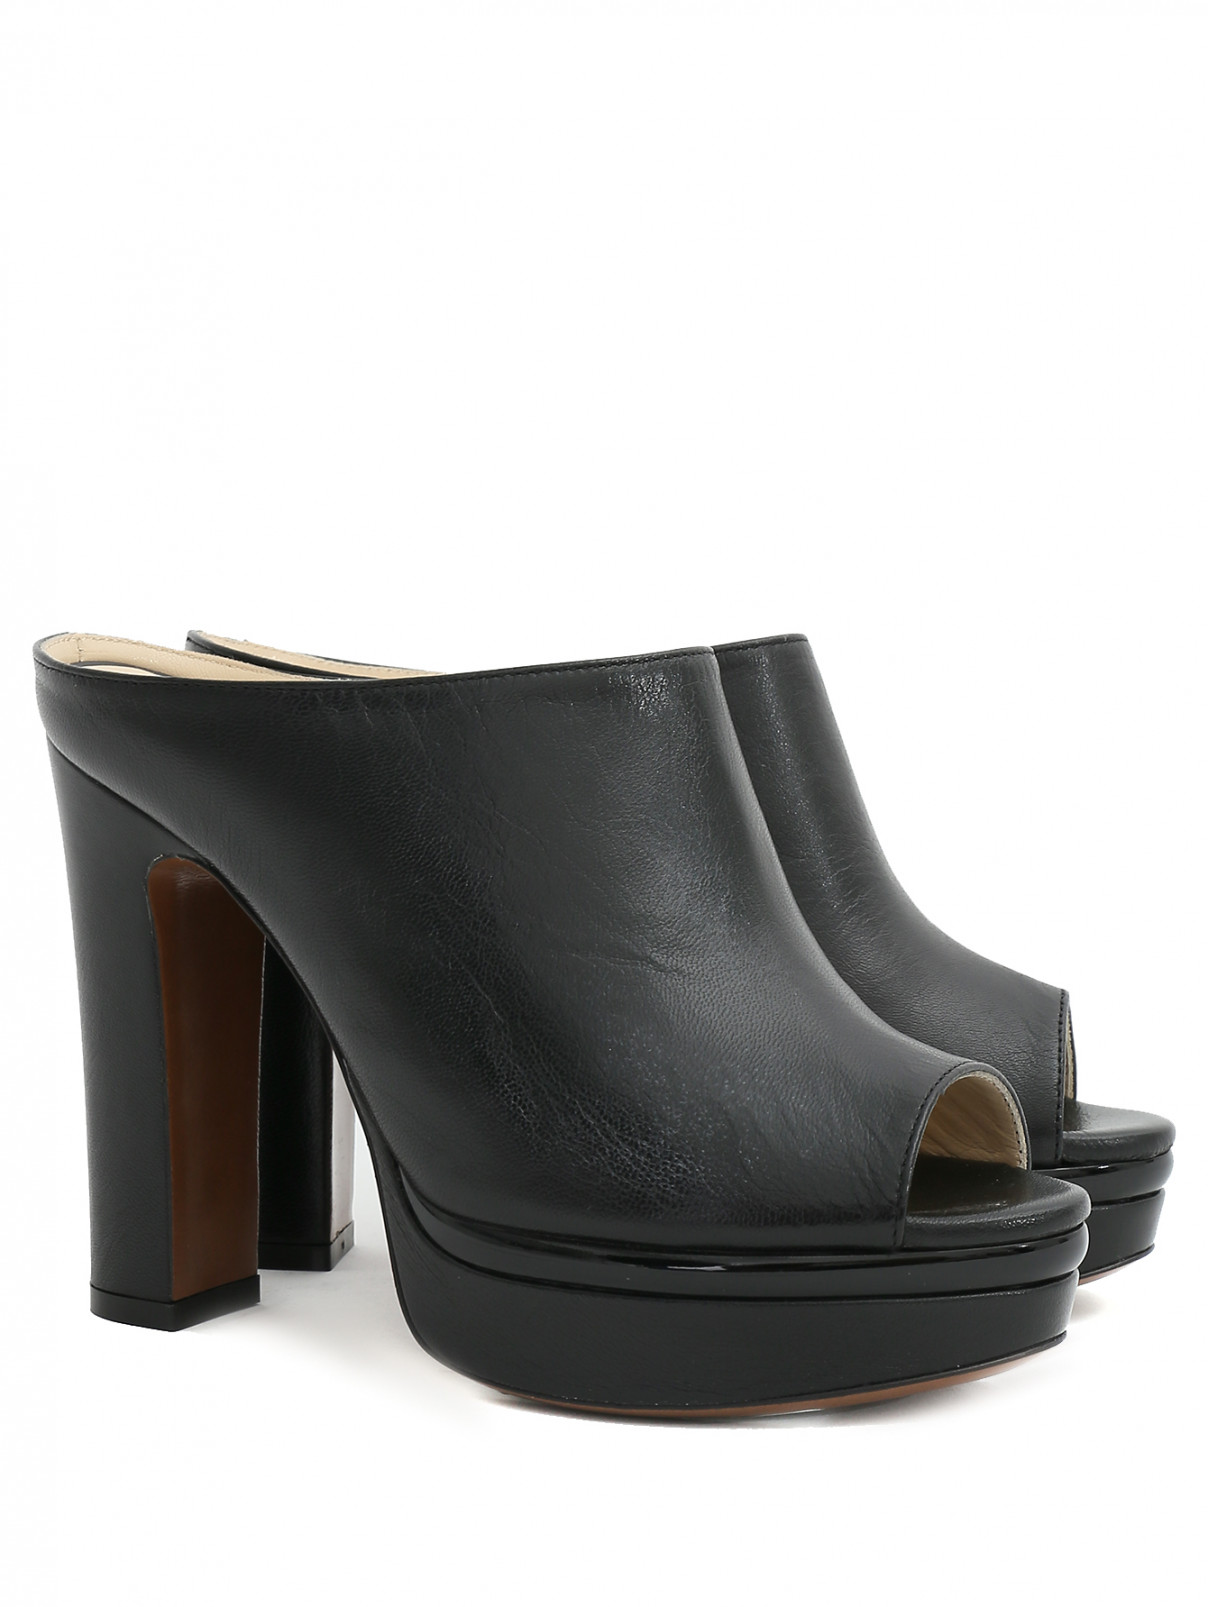 Открытые туфли из кожи на устойчивом каблуке L'Autre Chose  –  Общий вид  – Цвет:  Черный